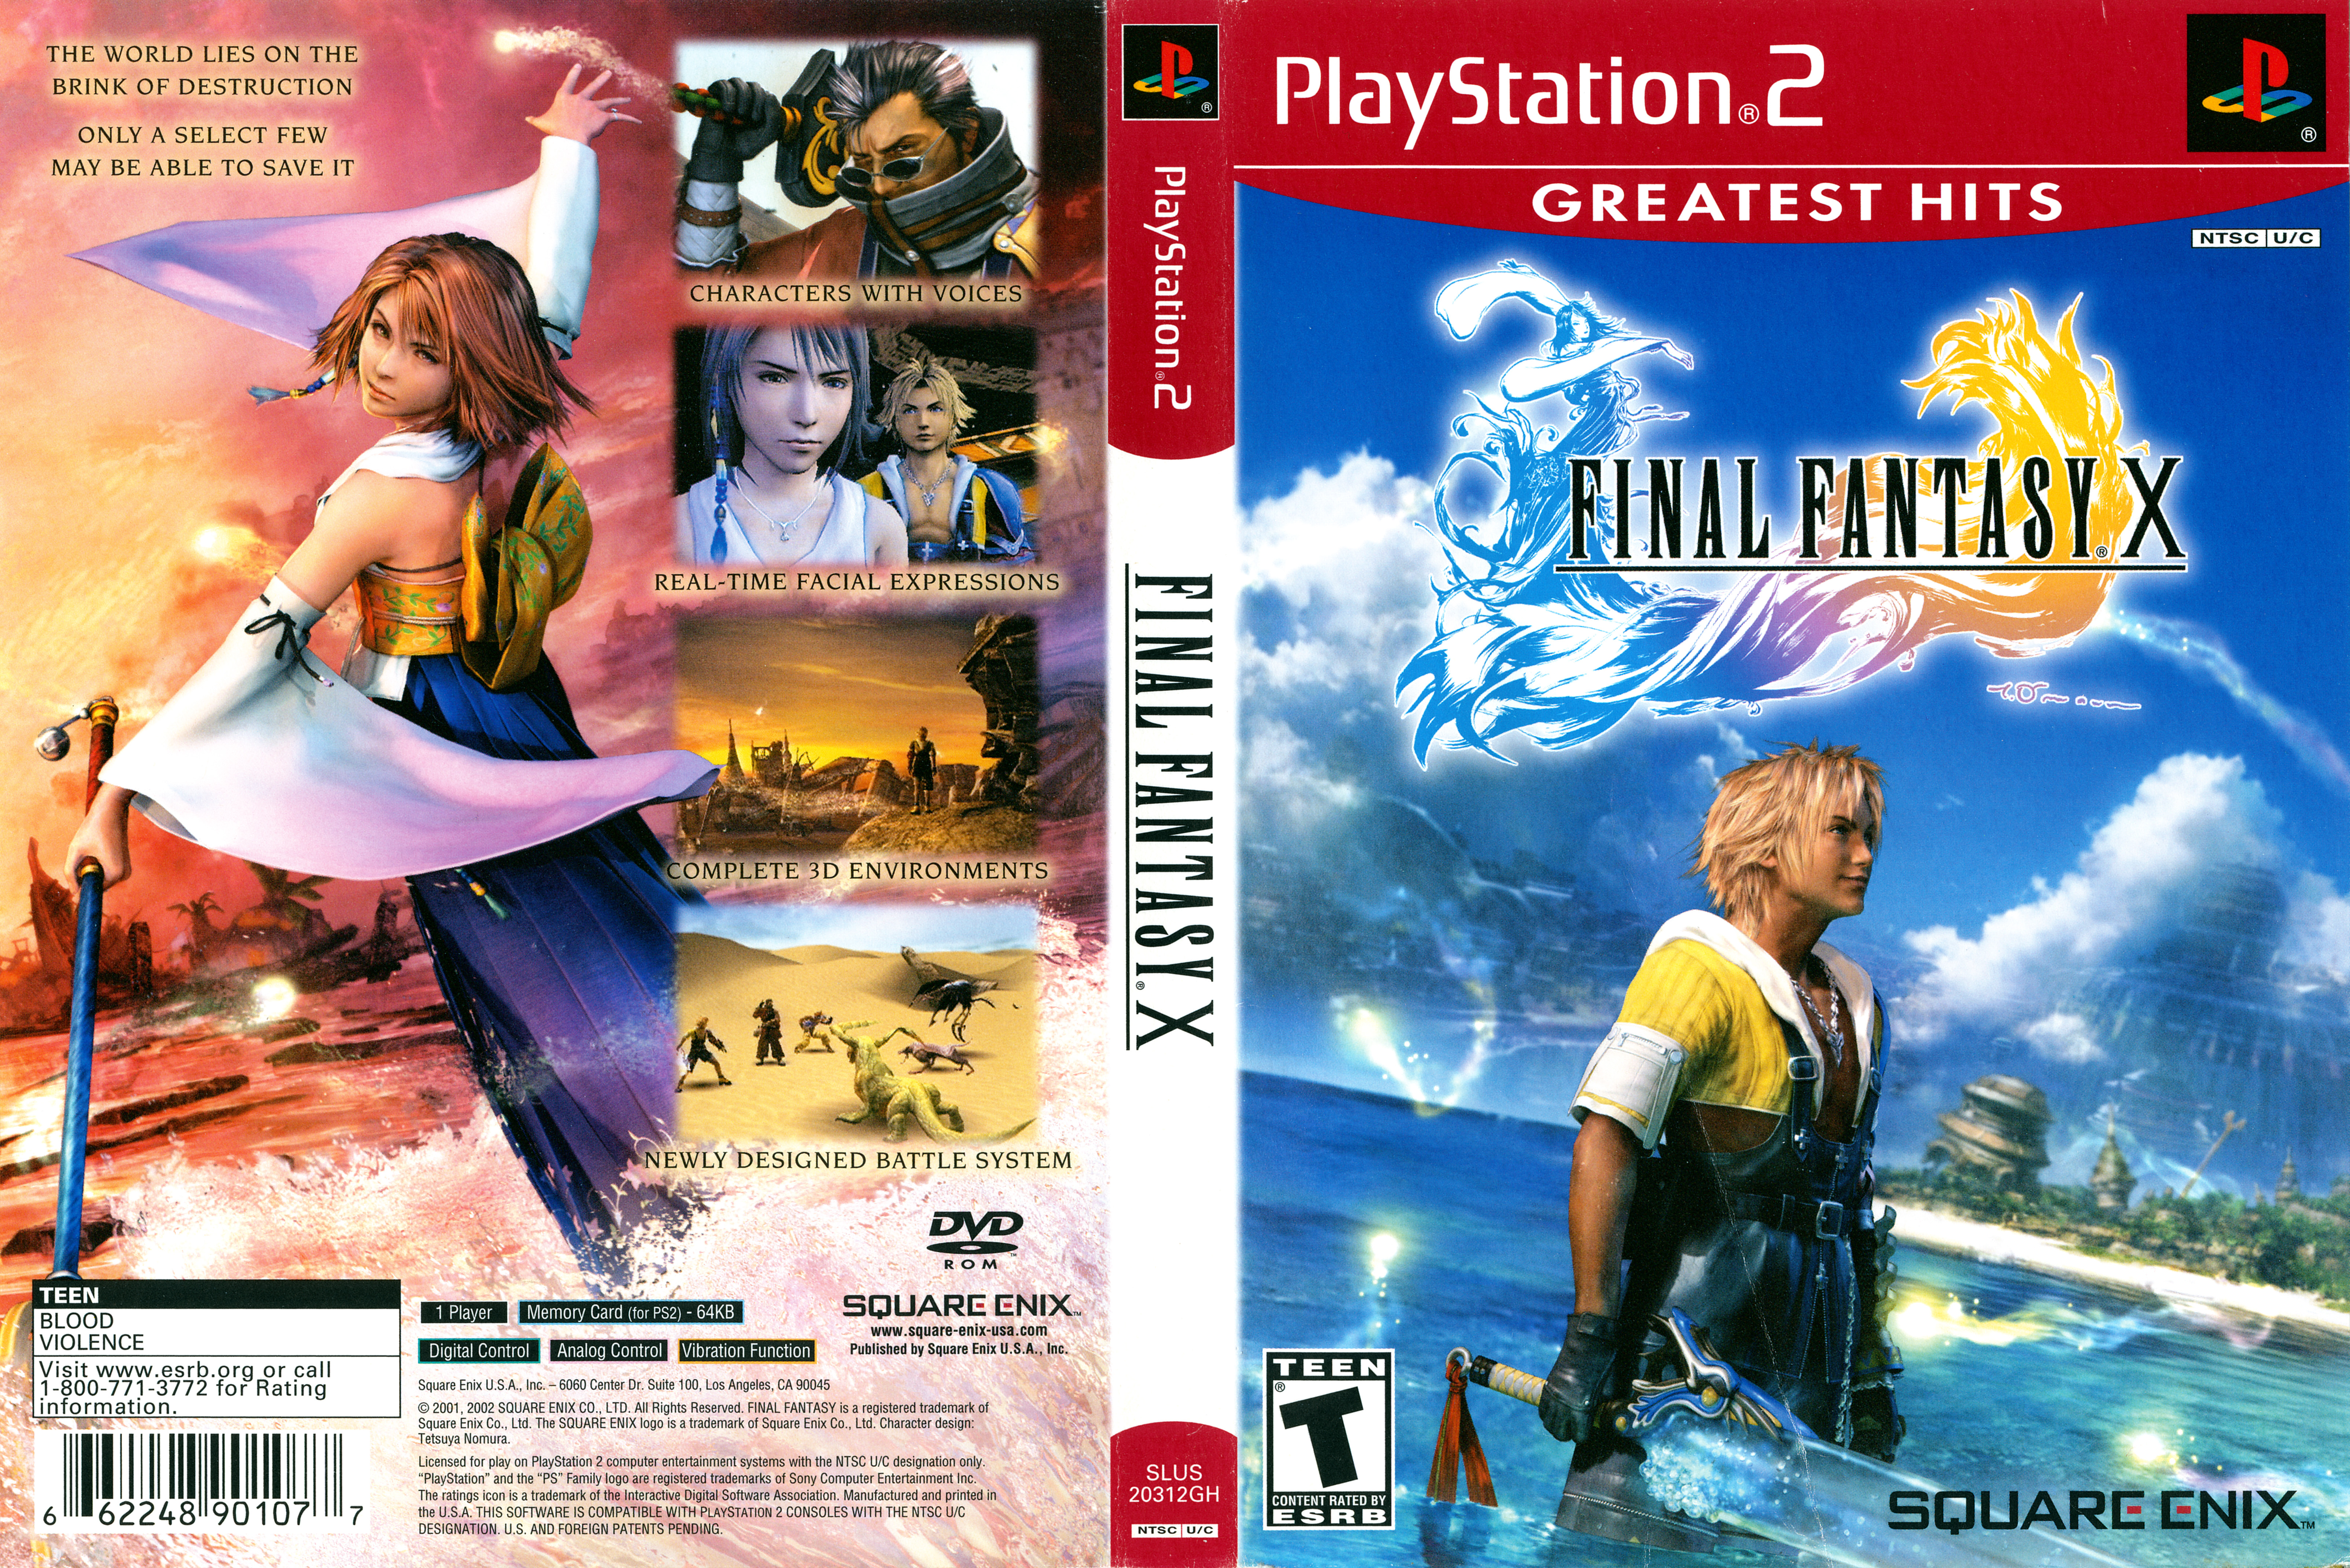 Final Fantasy X [SLUS 20312GH] (Sony Playstation 2) - Box Scans 